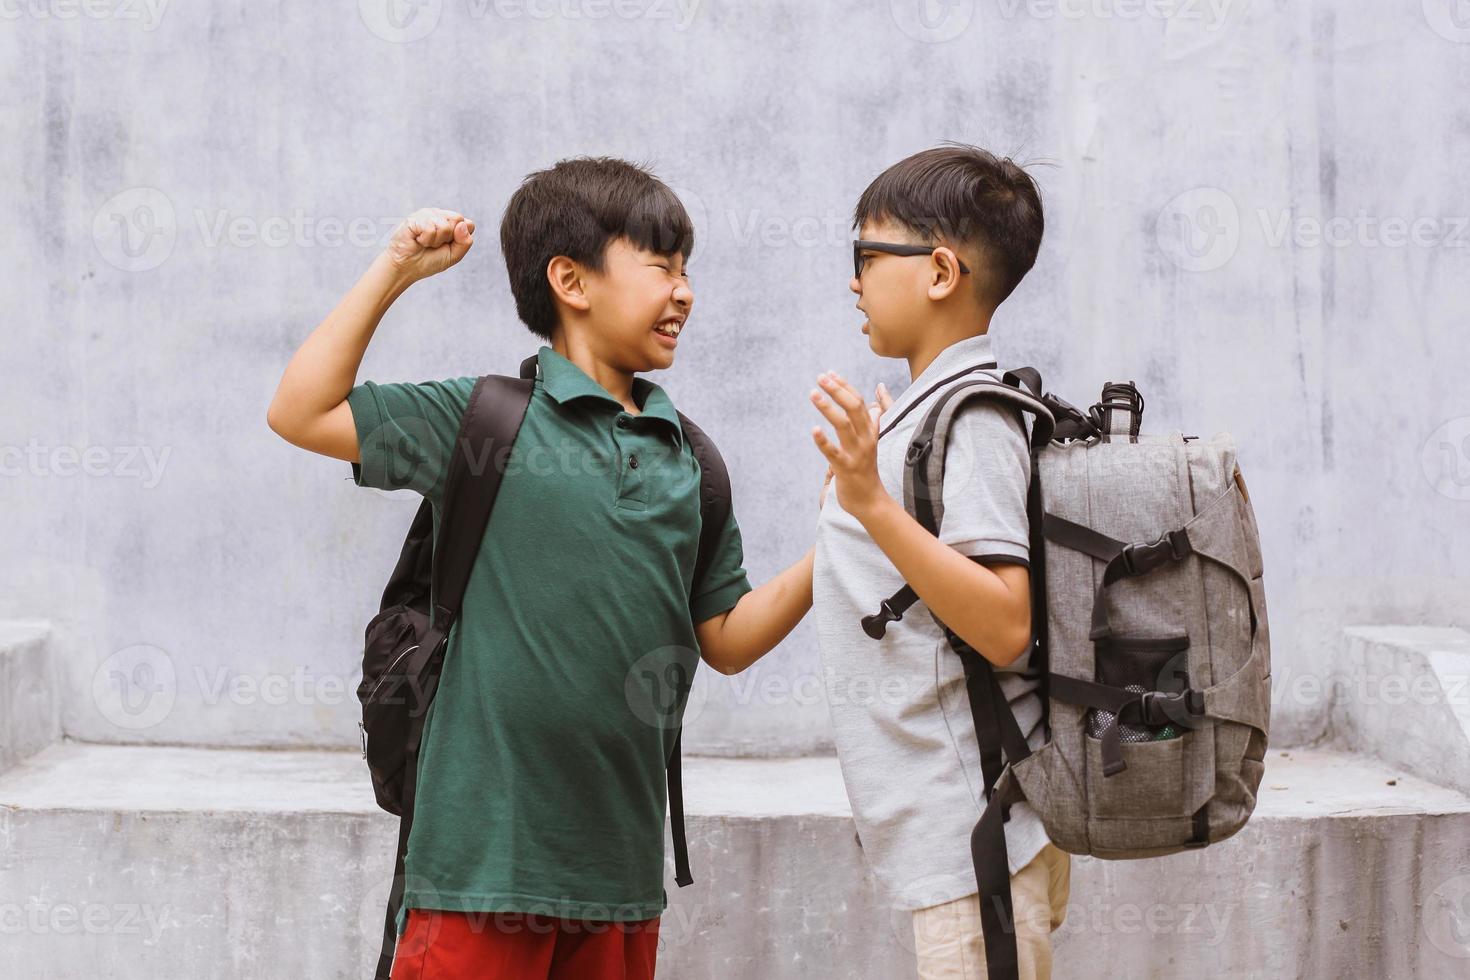 un étudiant asiatique se fait intimider à l'école ou des enfants se battent ou attaquent leur camarade de classe à l'école photo